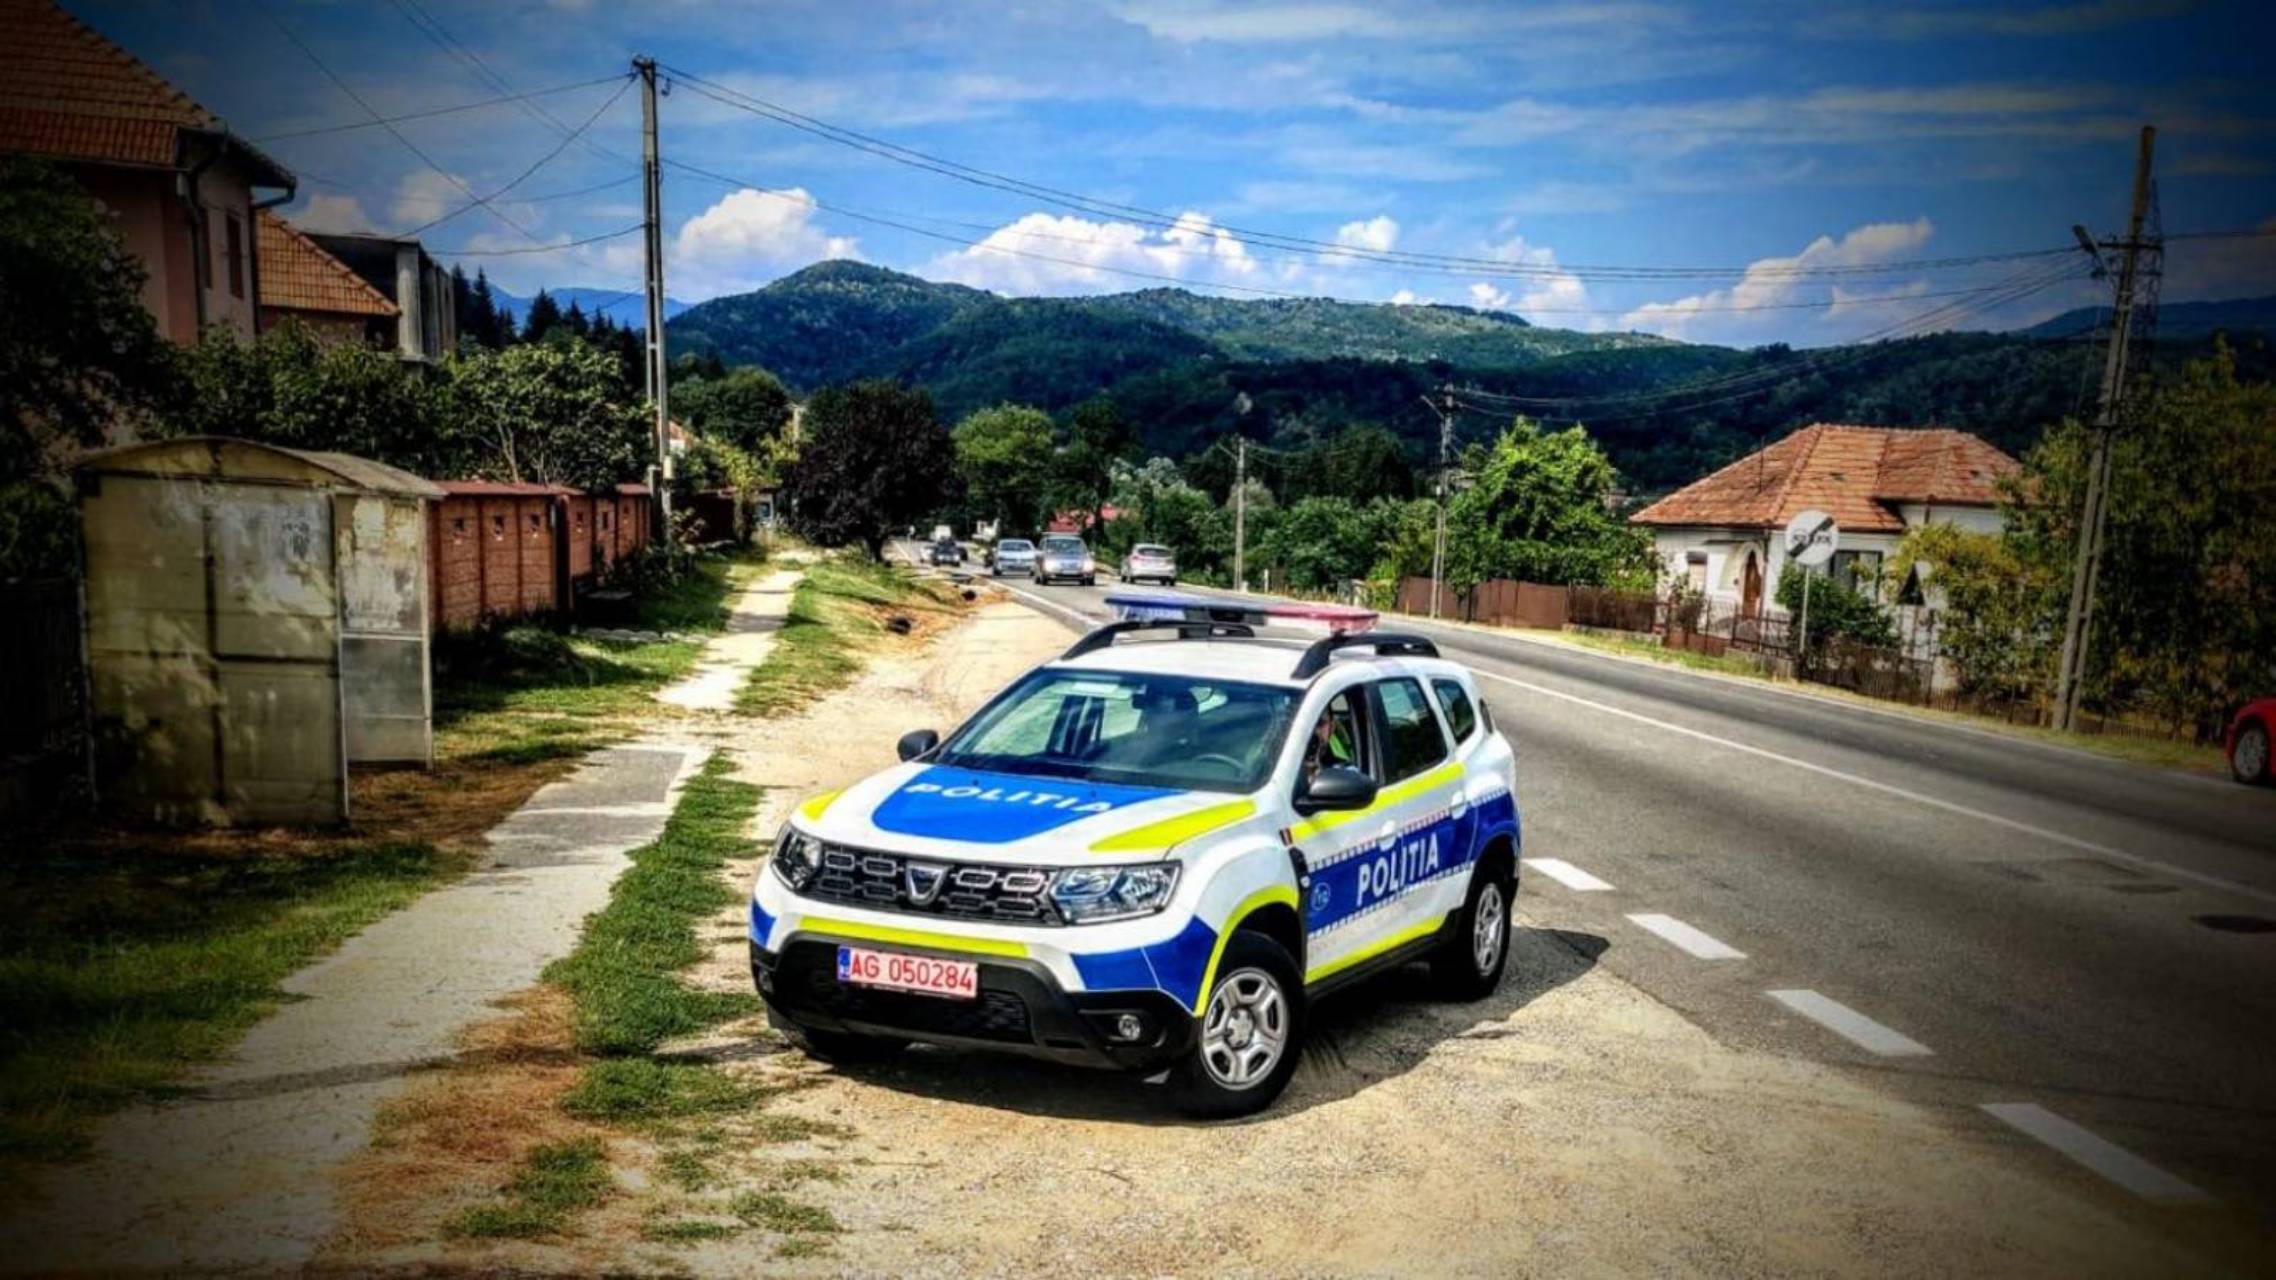 La polizia rumena effettua controlli frequenti